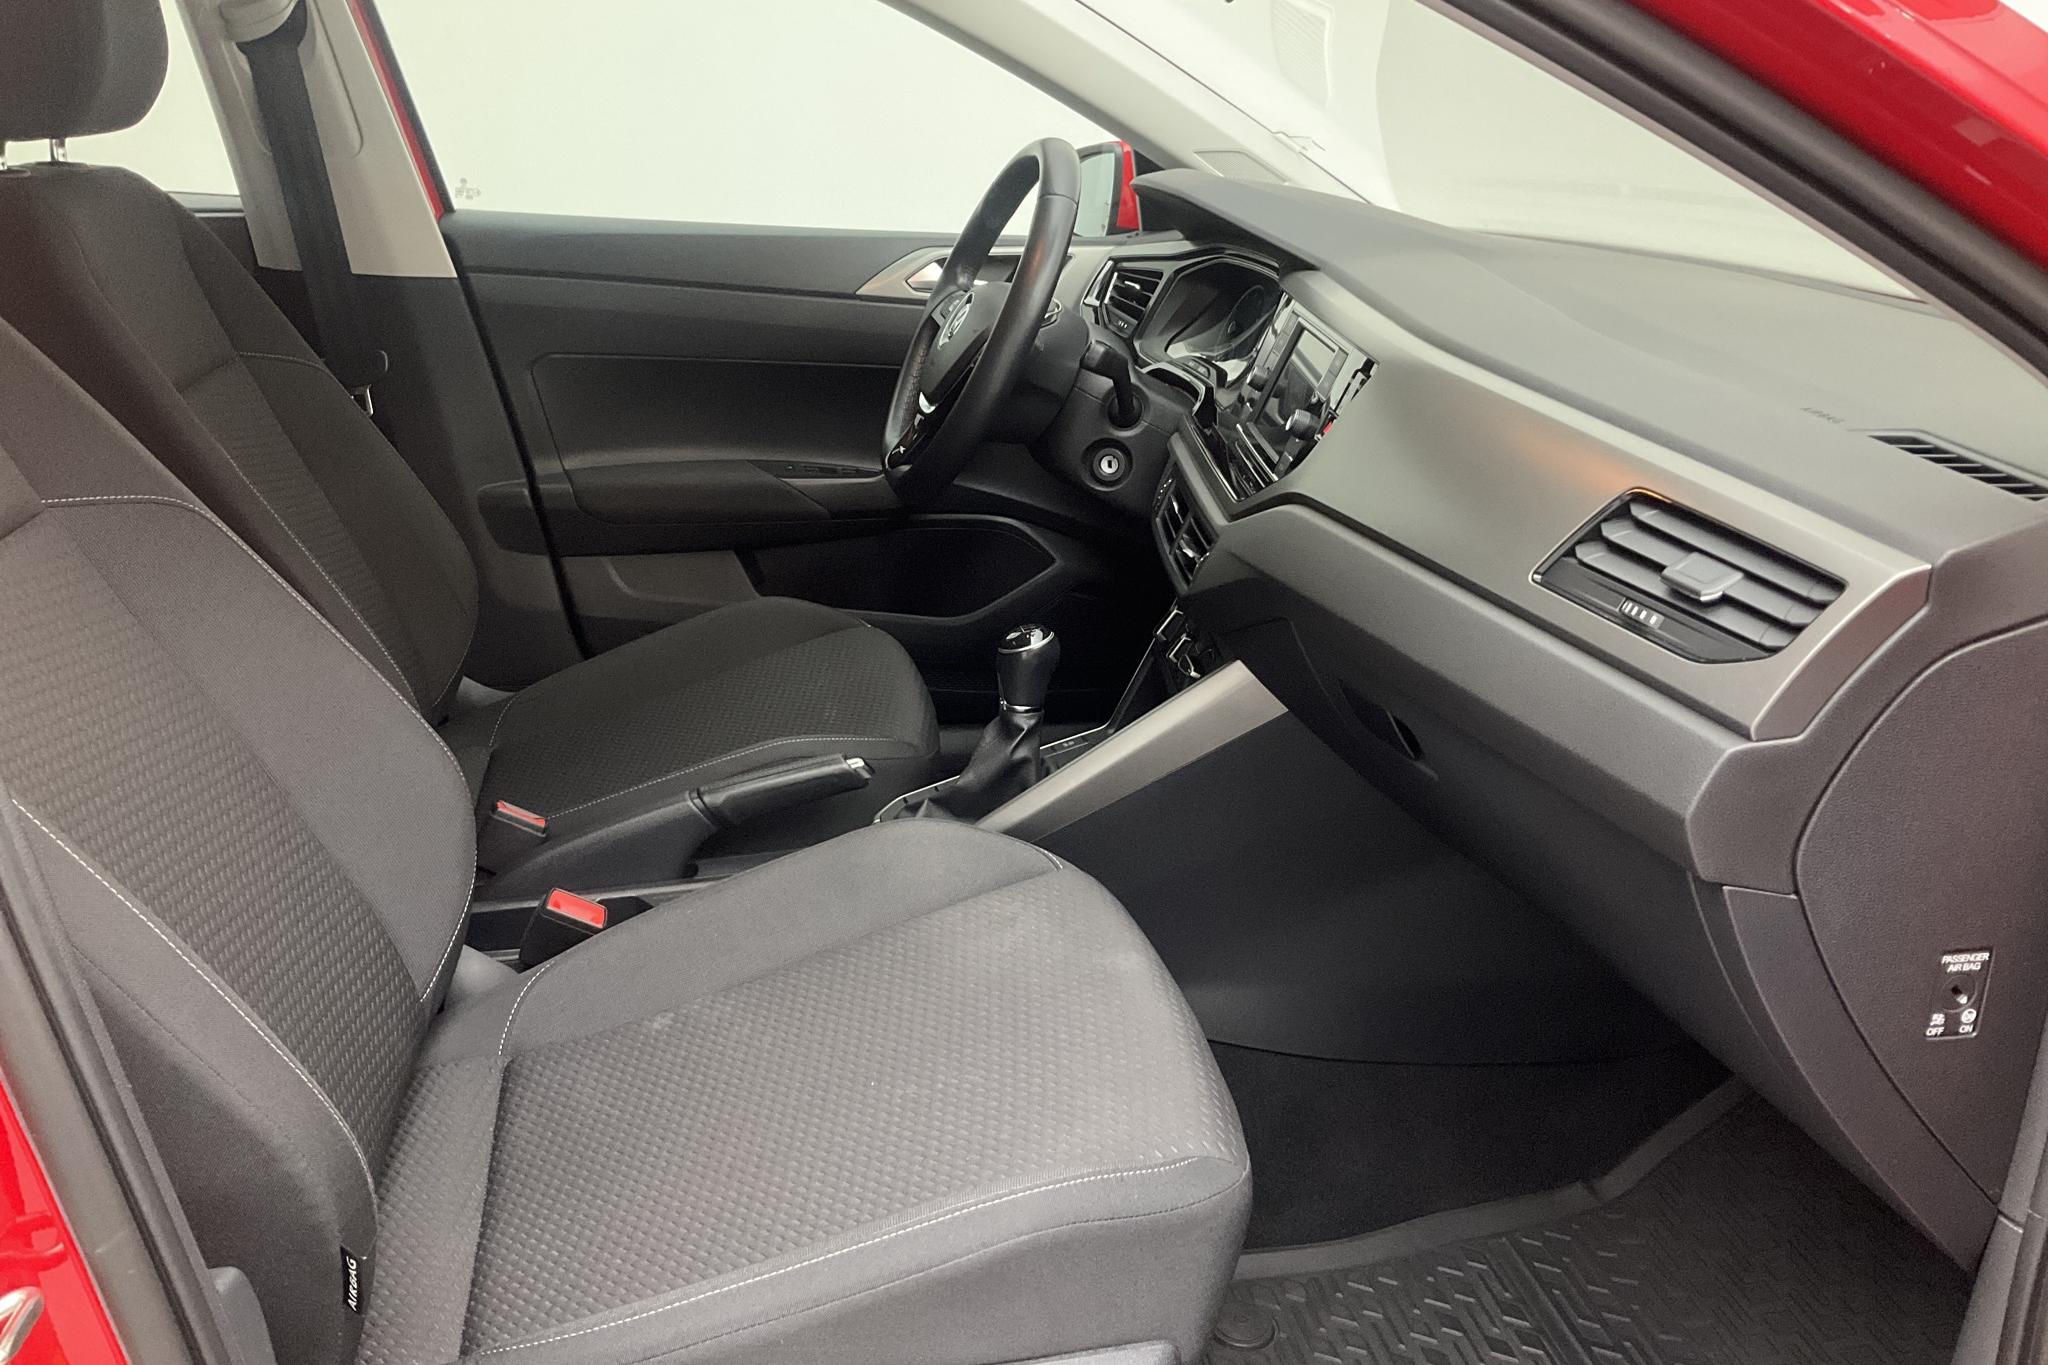 VW Polo 1.0 TSI 5dr (95hk) - 101 830 km - Manual - red - 2019